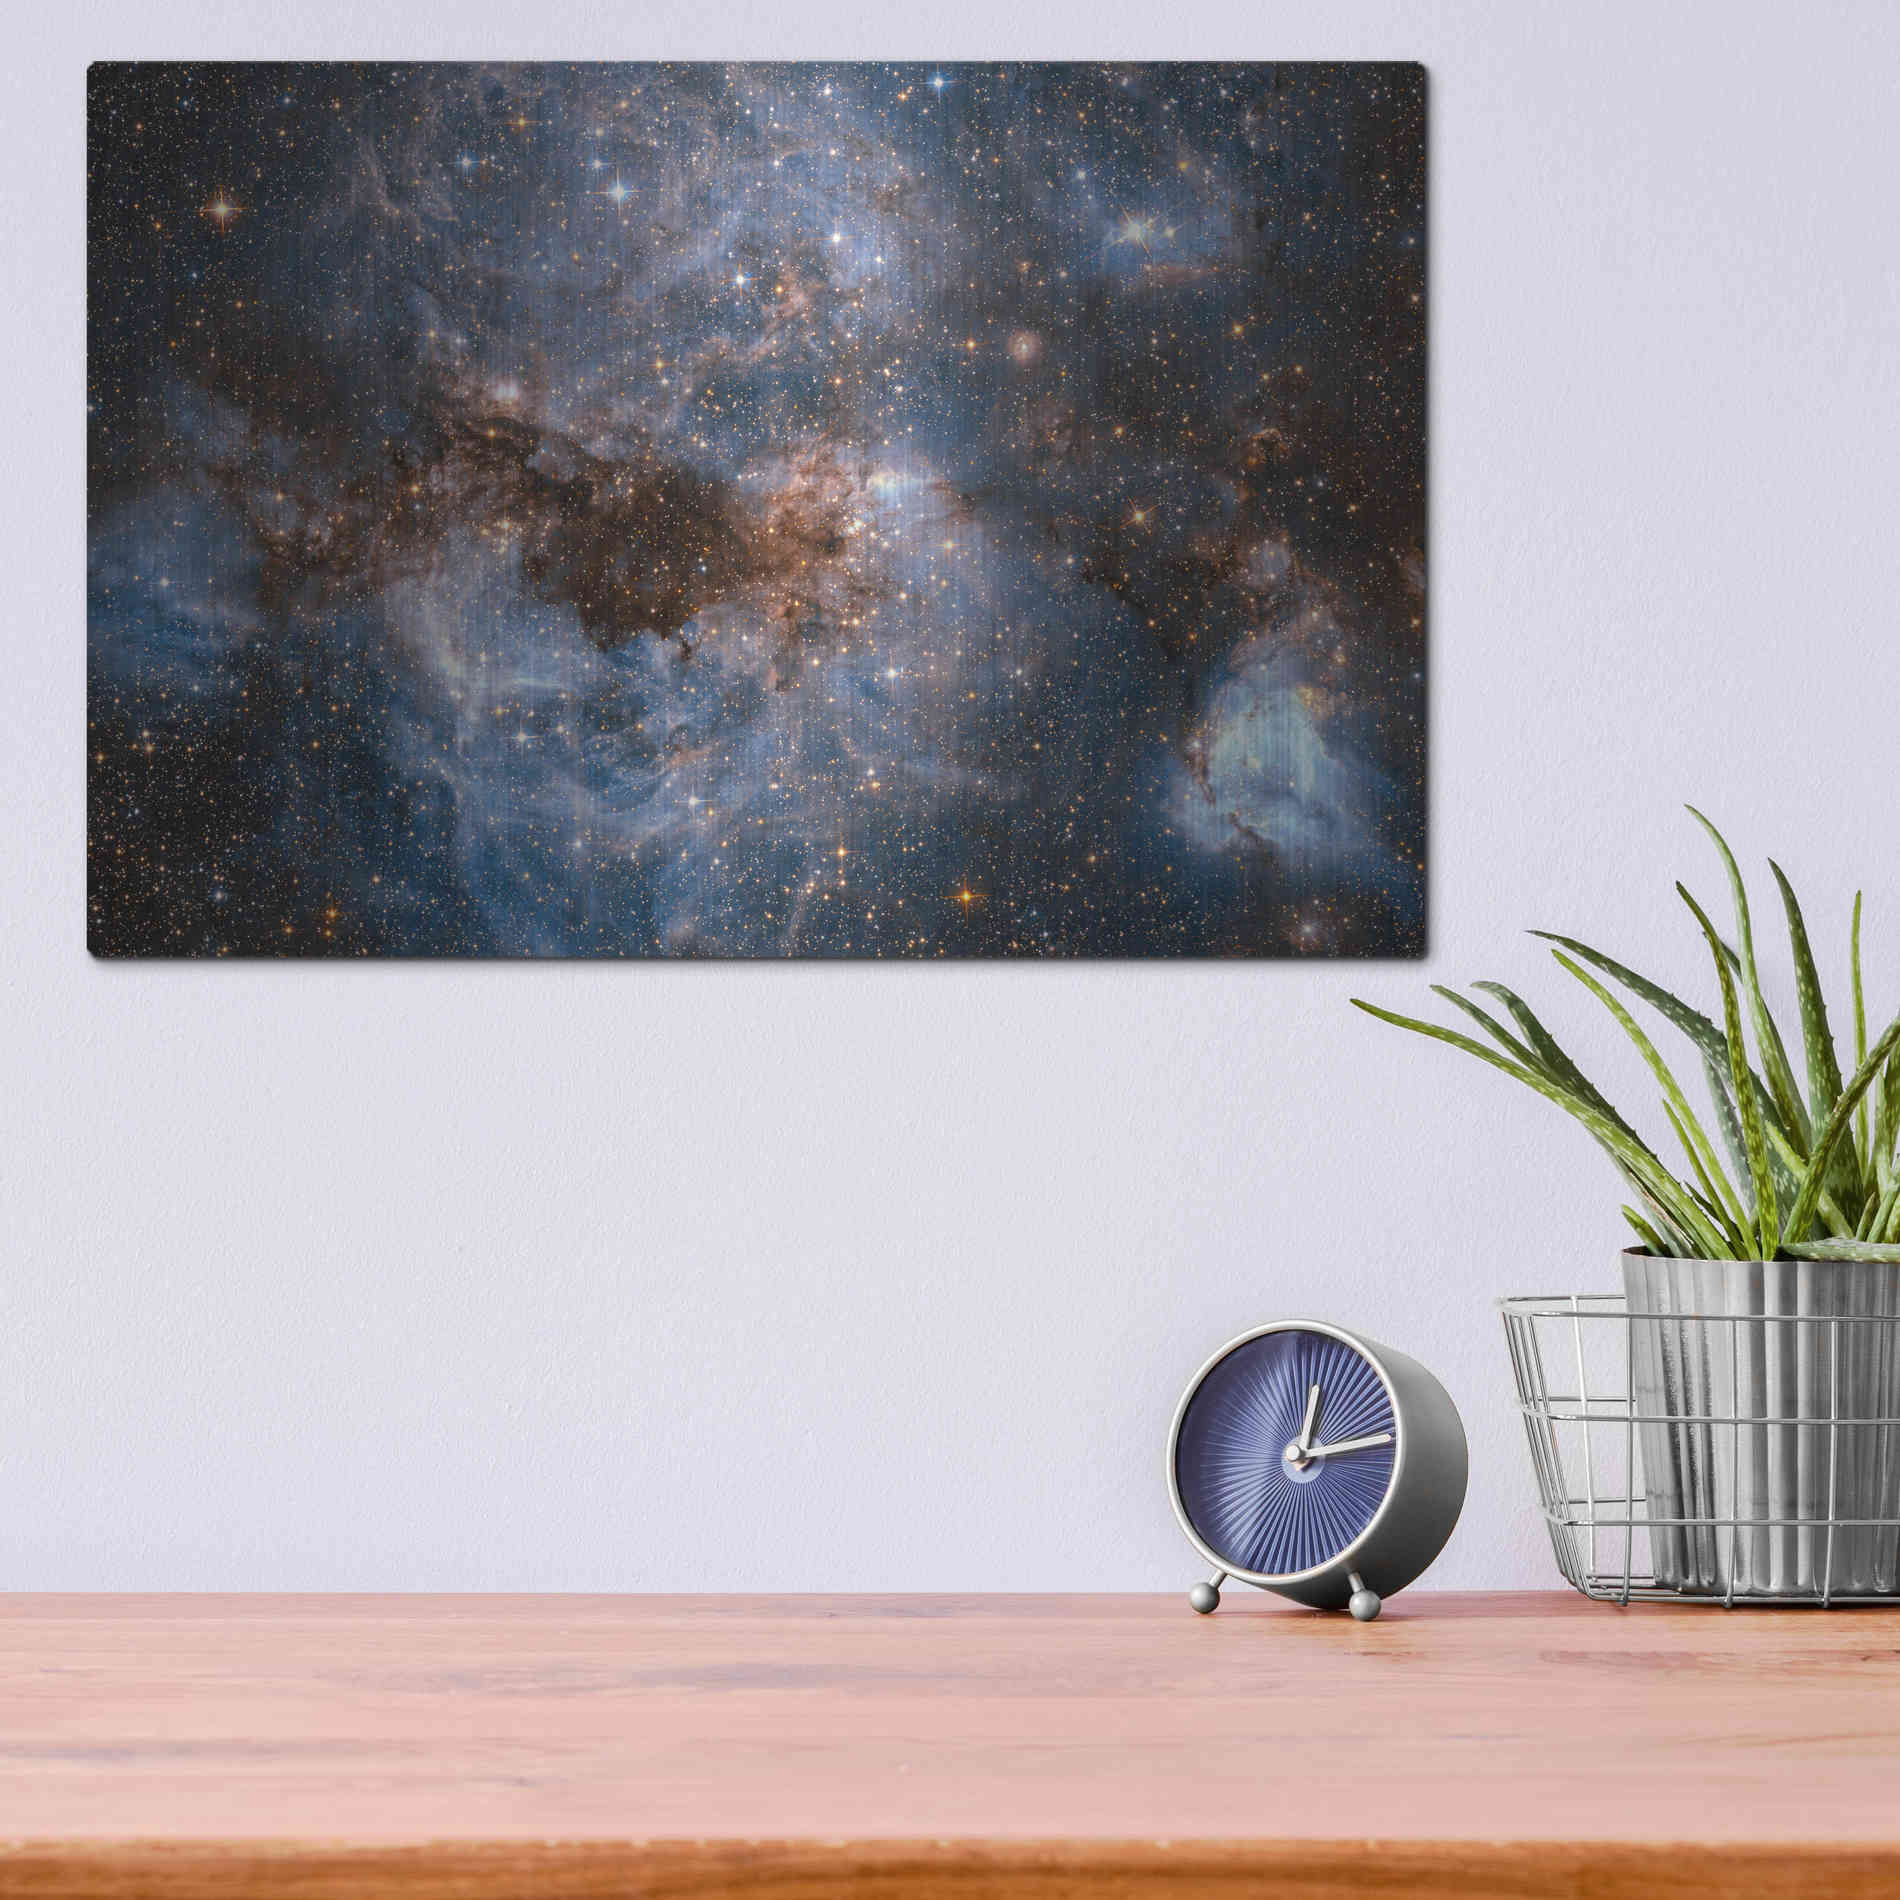 Luxe Metal Art 'Maelstrom Cloud' Hubble Space Telescope, Metal Wall Art,16x12